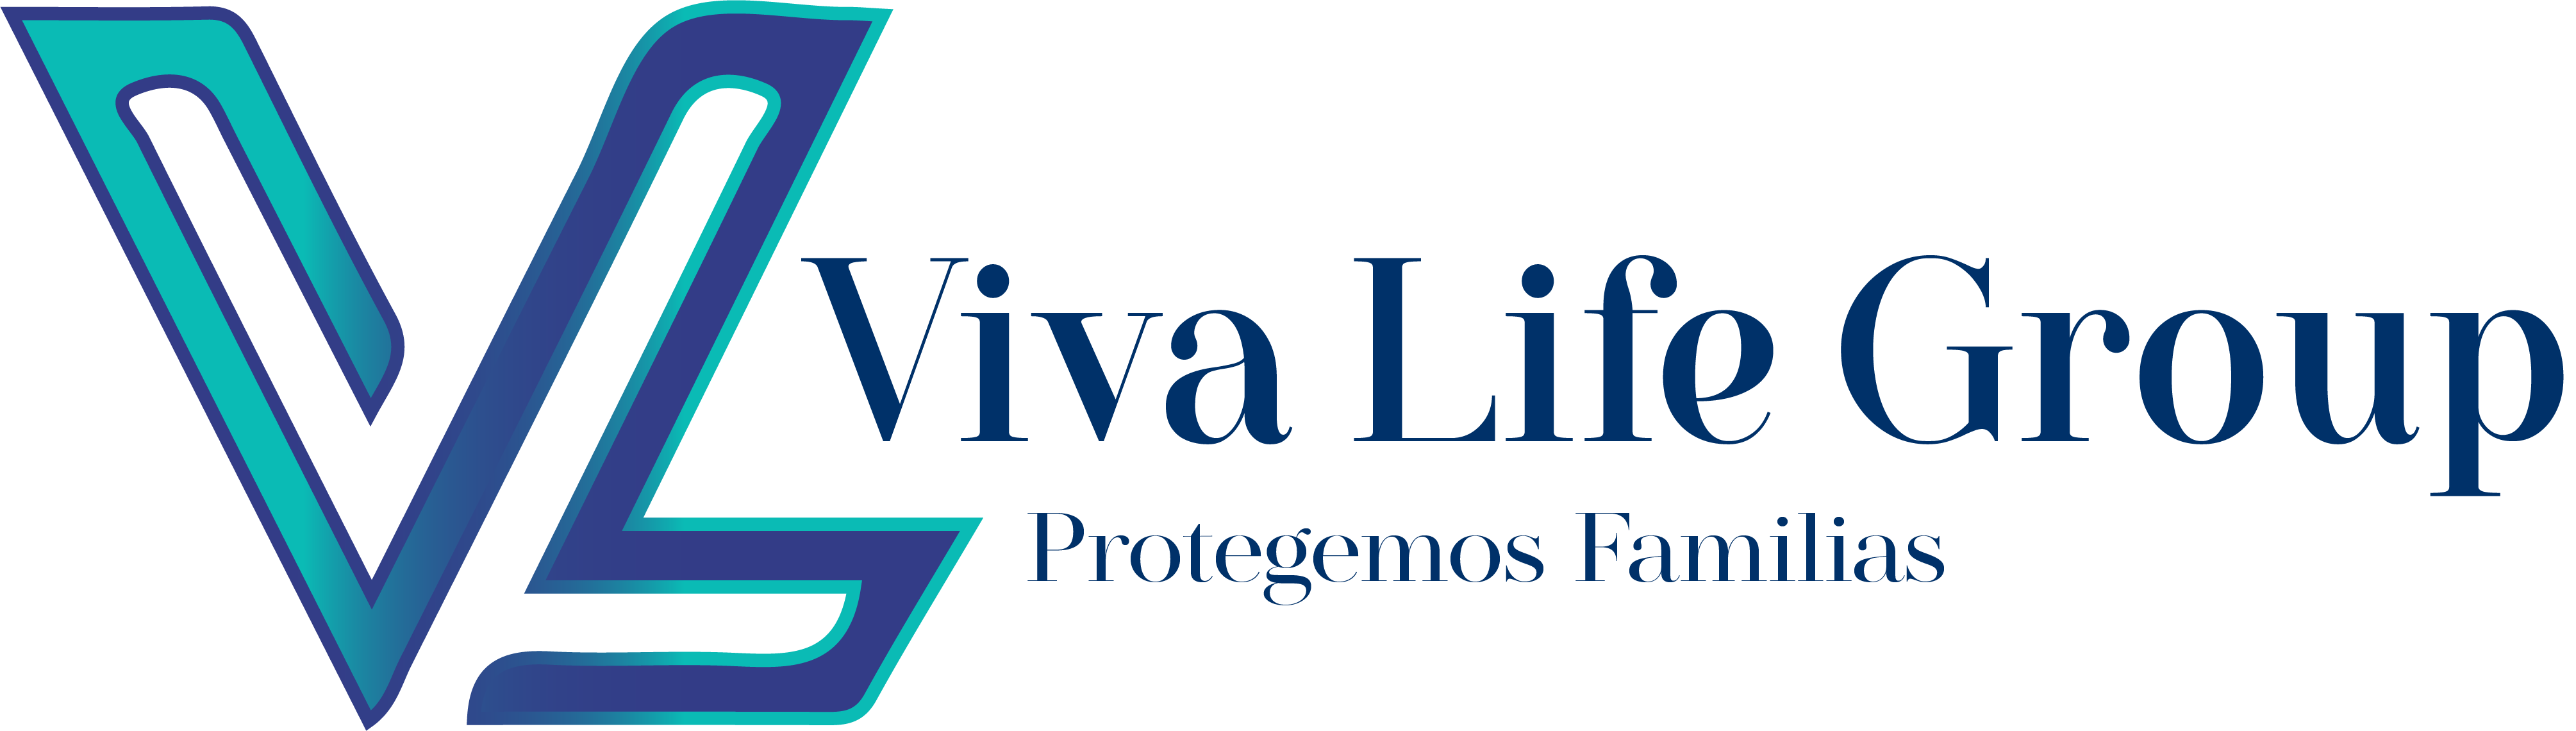 Viva Life Group